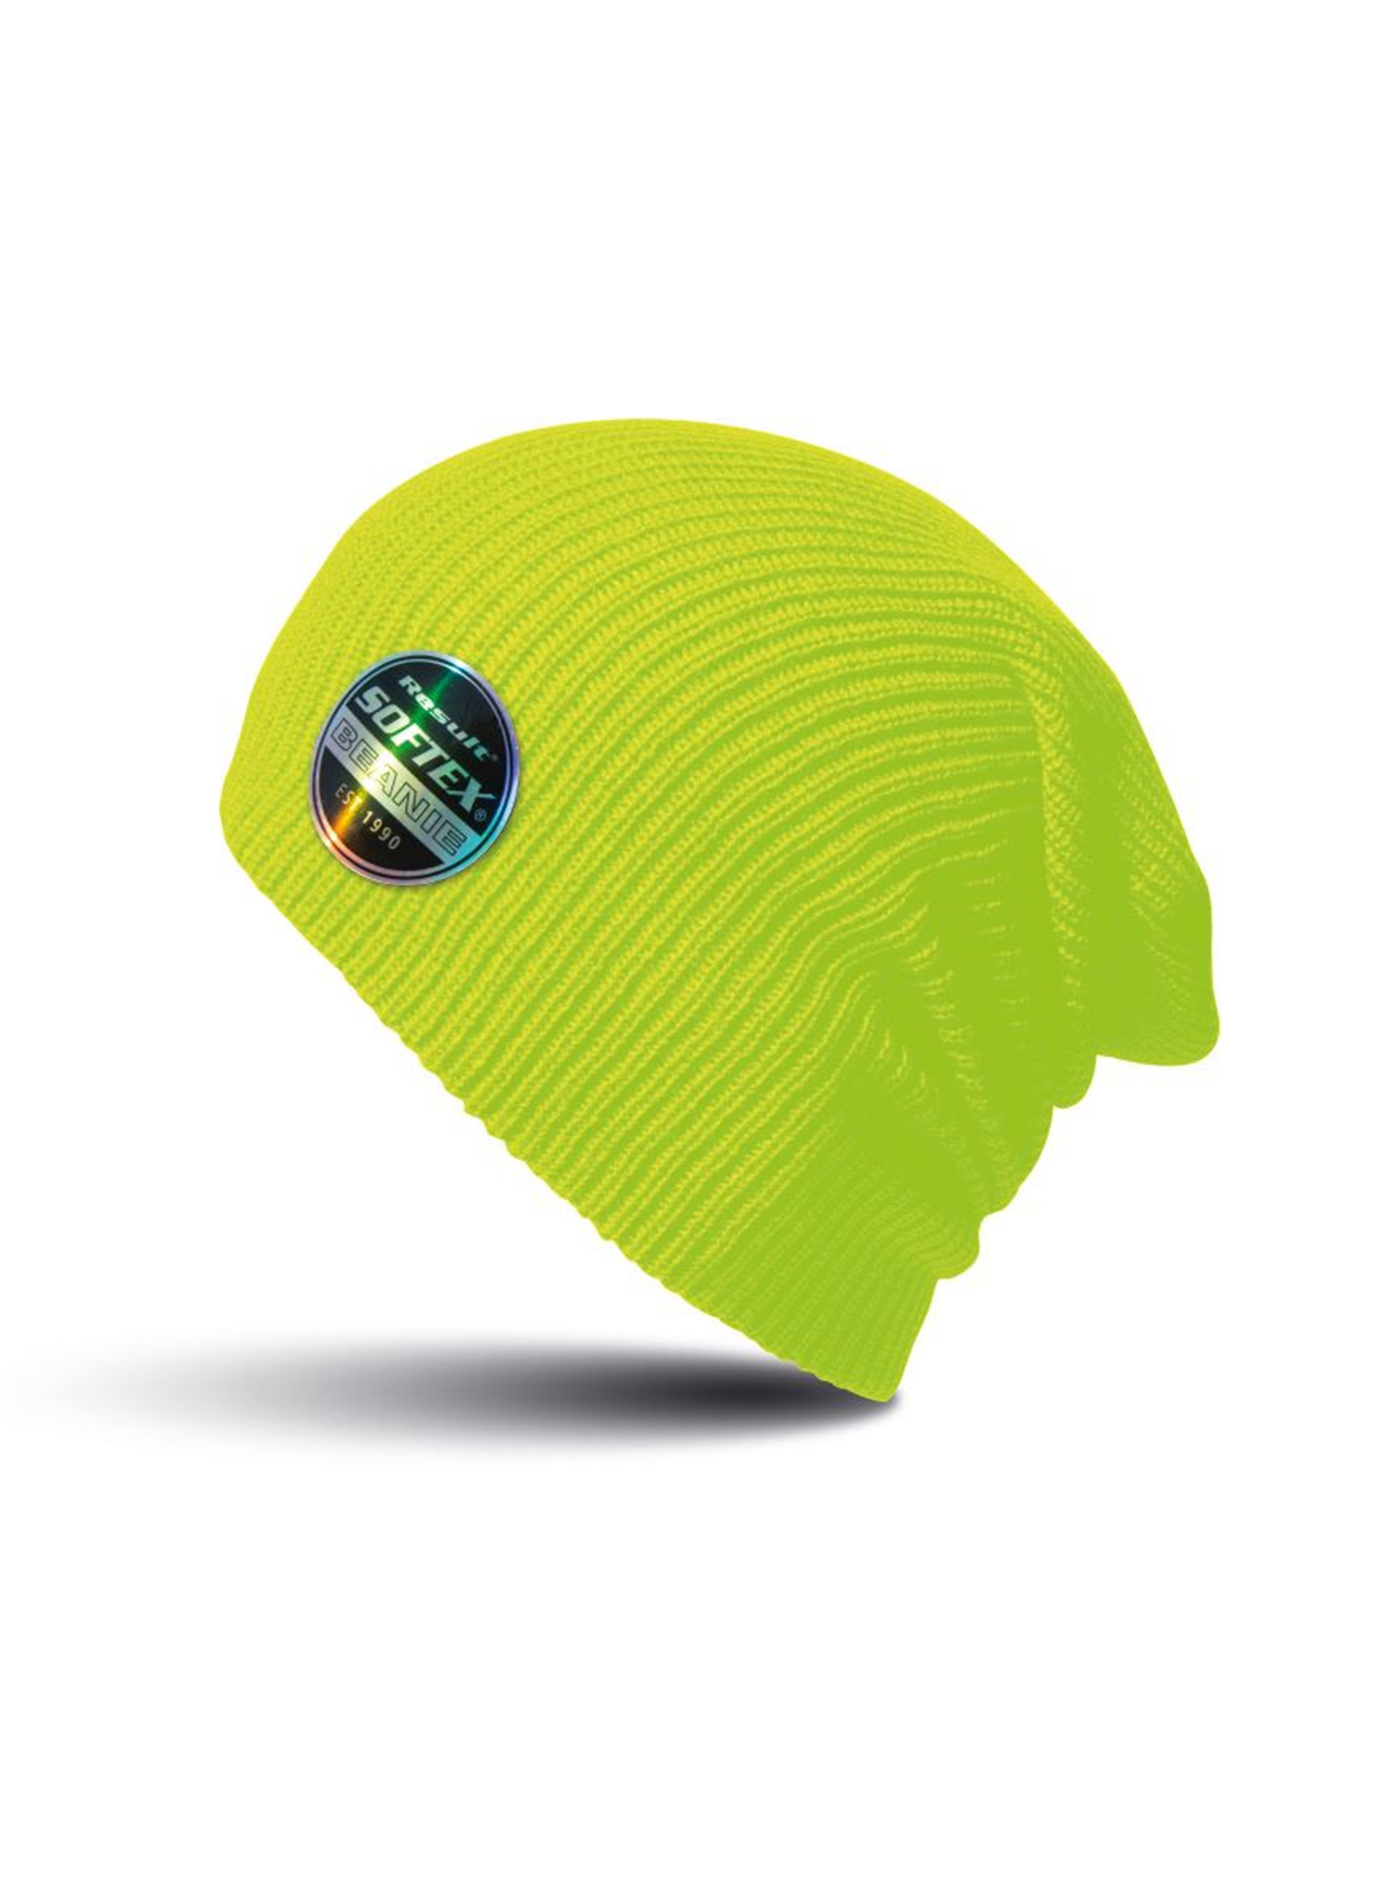 Čepice Result headwear softex beanie - Zářivá žlutá univerzal